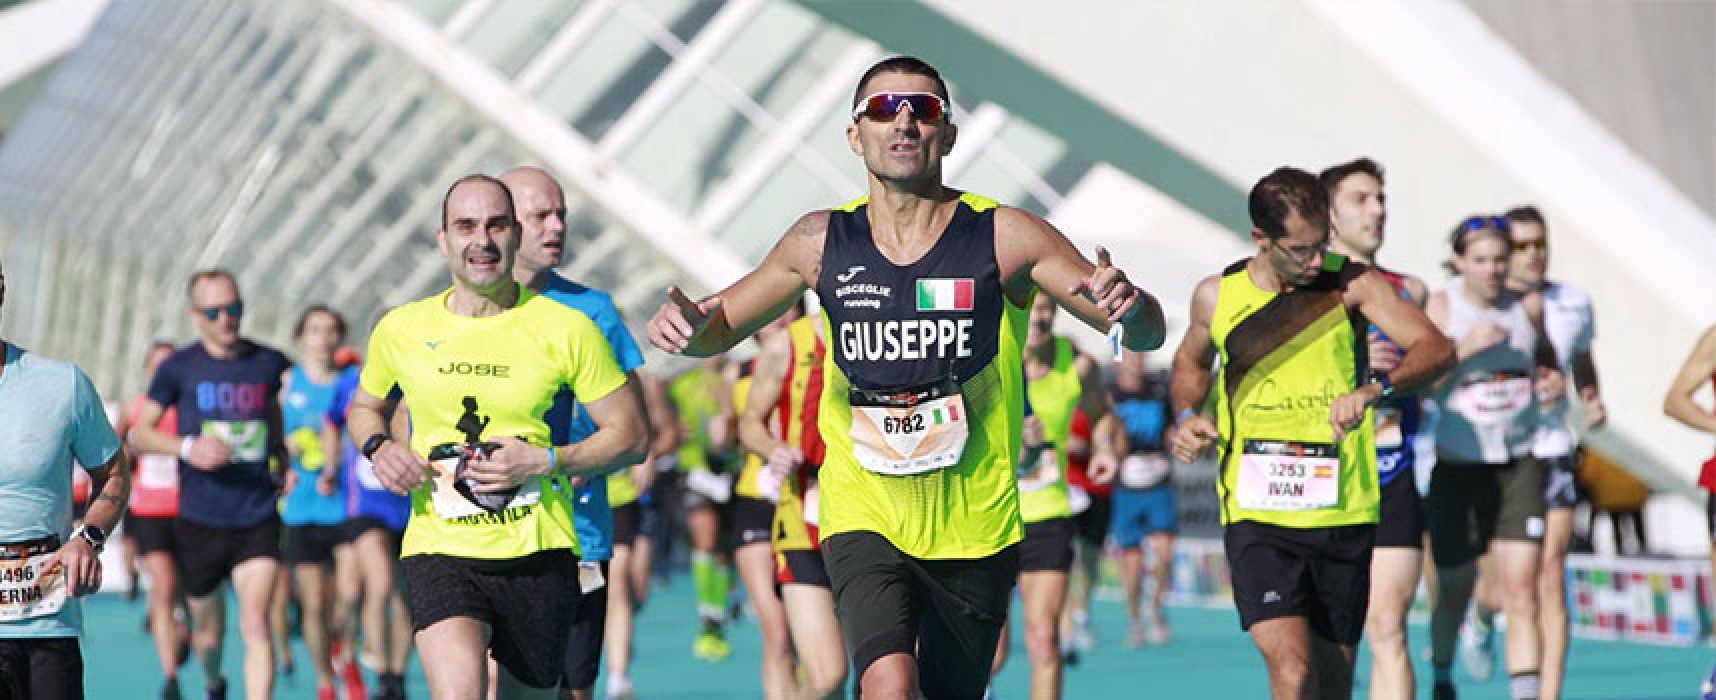 Prestazione di rilievo per Giuseppe Ruggieri alla Valencia Marathon